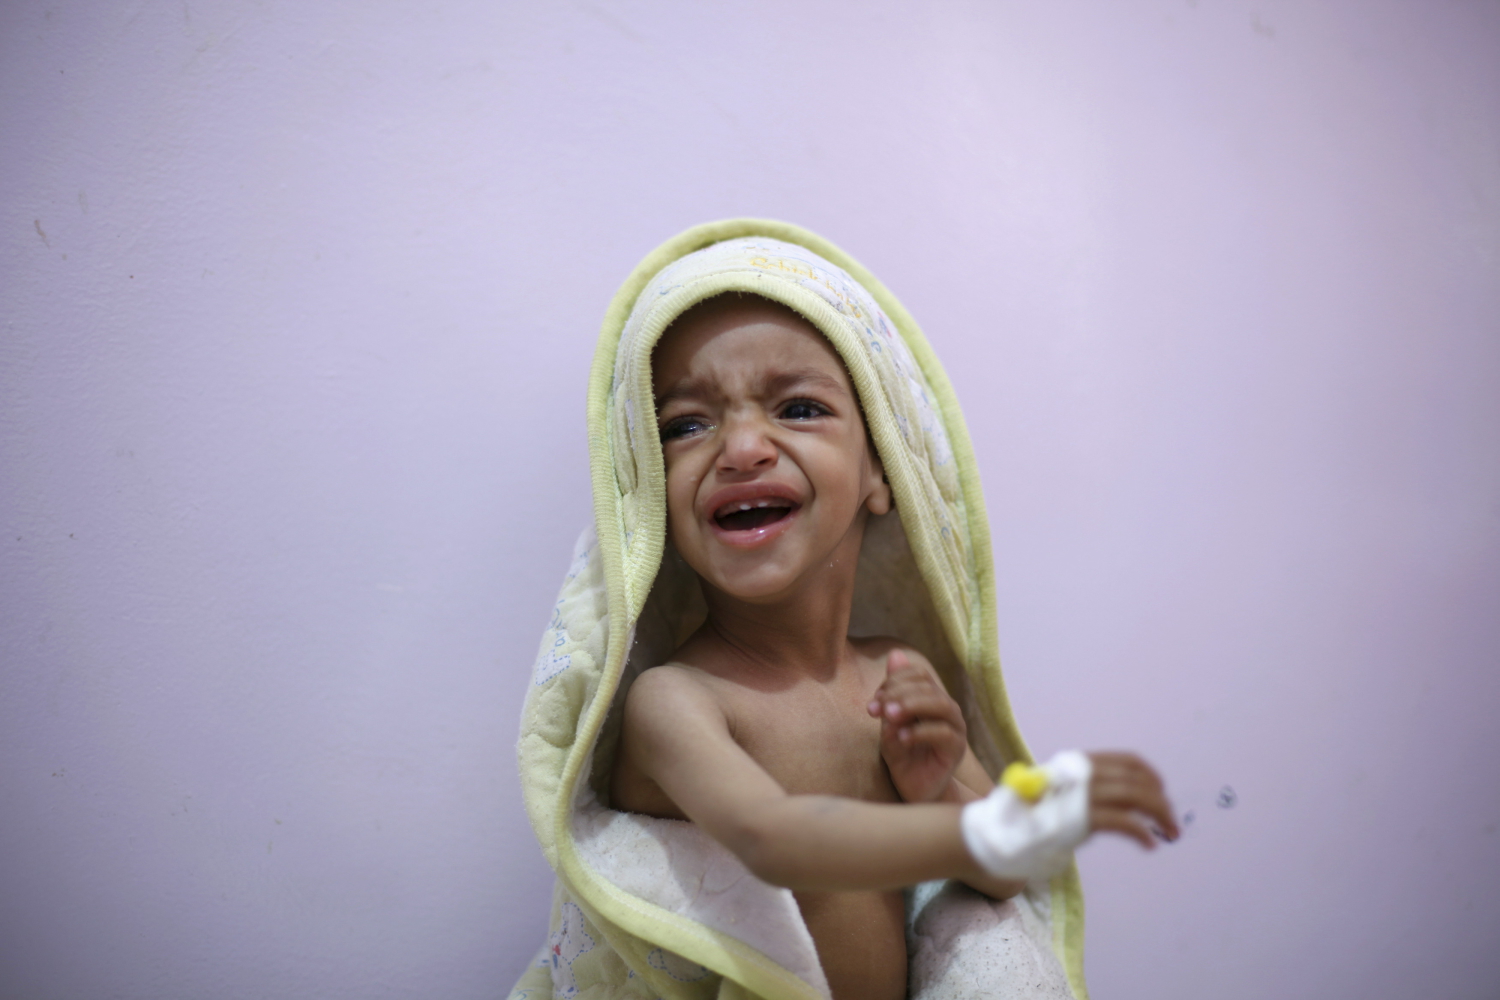 El coste de la guerra en Yemen: malnutrición, muertes y refugiados